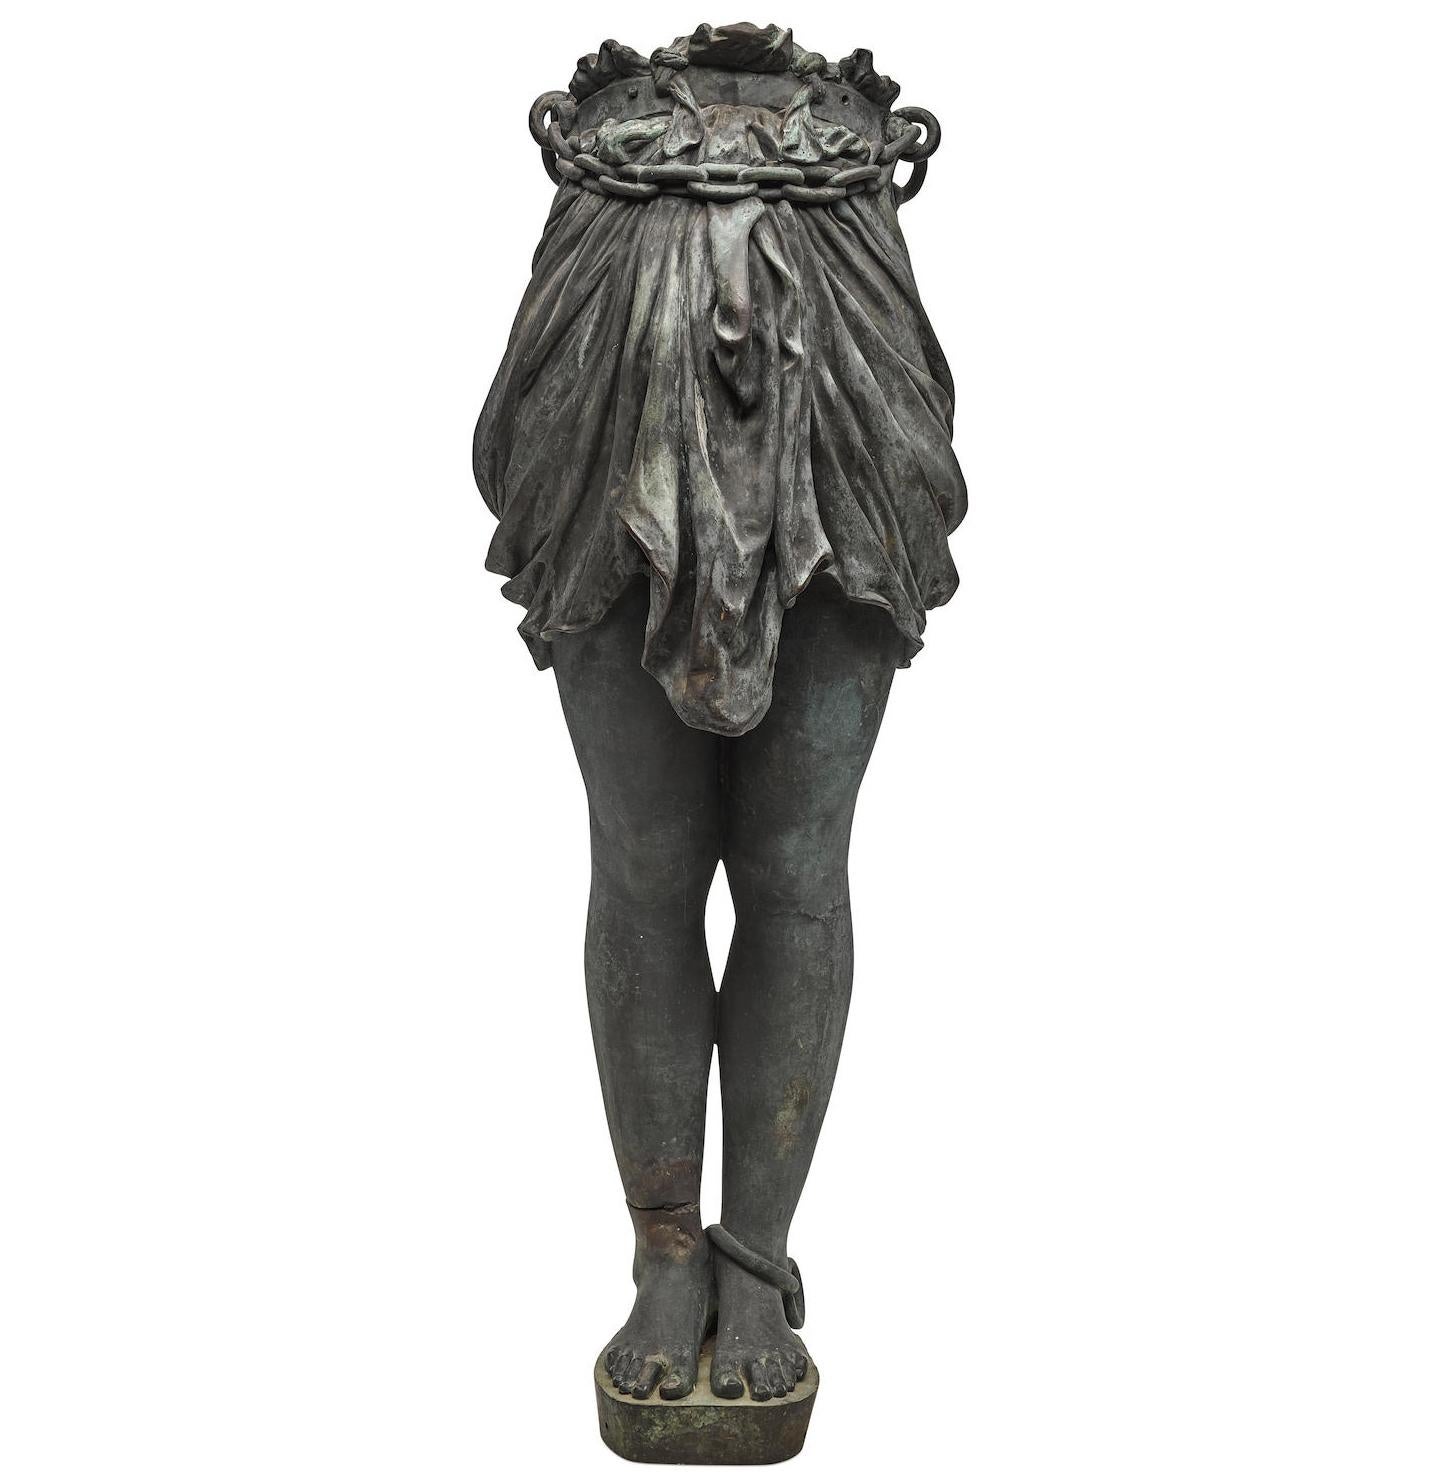 Une belle demi-figure d'Andromède en bronze patiné de style néo-grec, probablement française, de la fin du XIXe siècle ou du début du XXe siècle. L'extrémité inférieure de la femme, en bronze finement coulé, avec la taille enveloppée d'une lourde